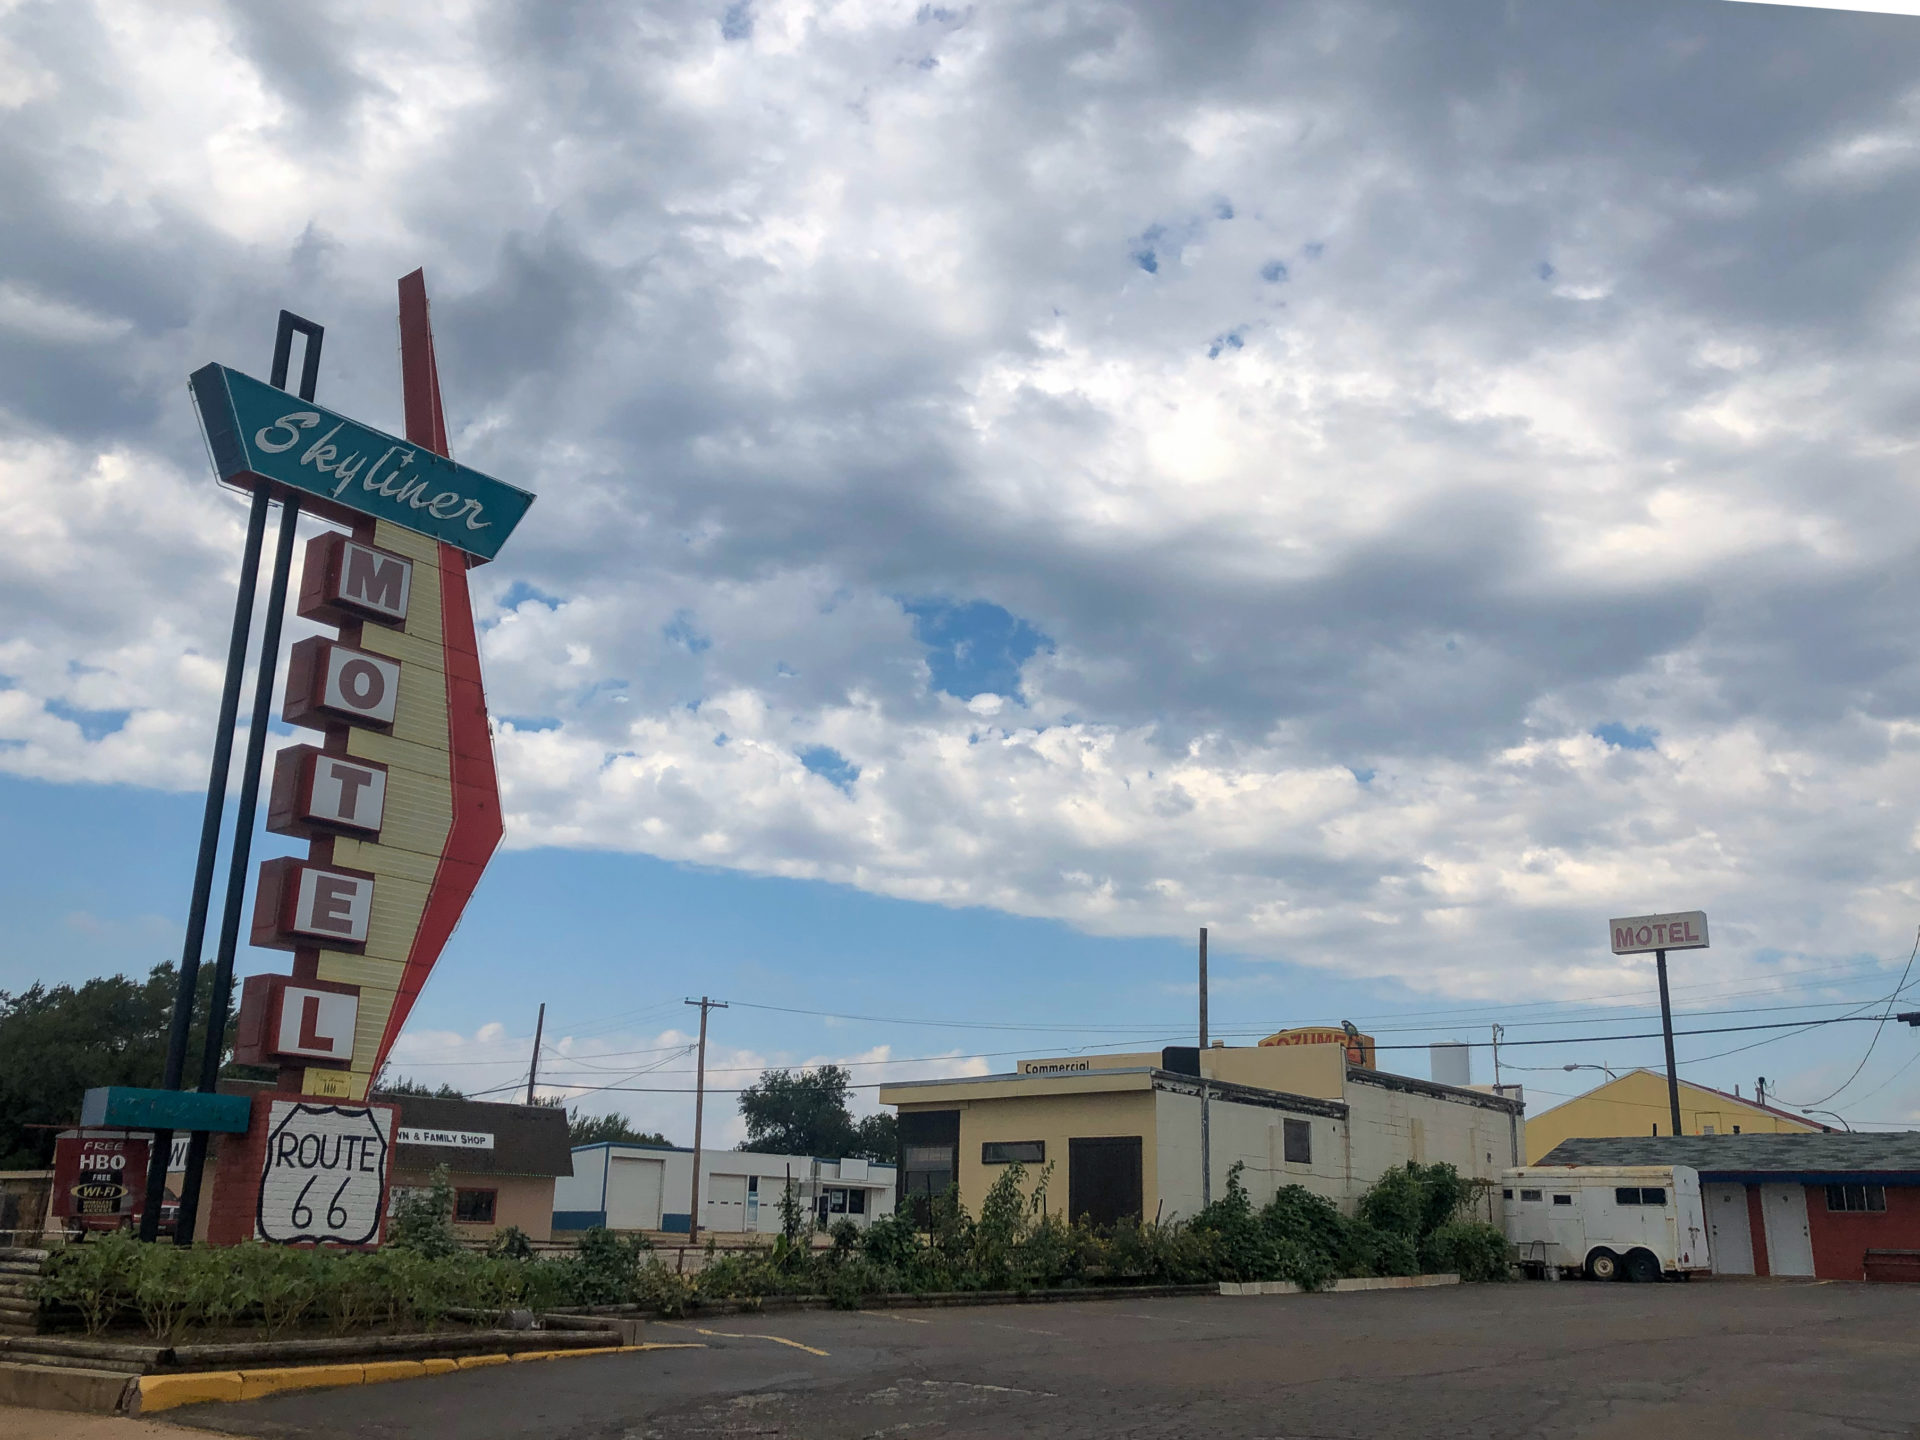 Skyliner Motel mit Neonreklame an der Route 66 in Oklahoma